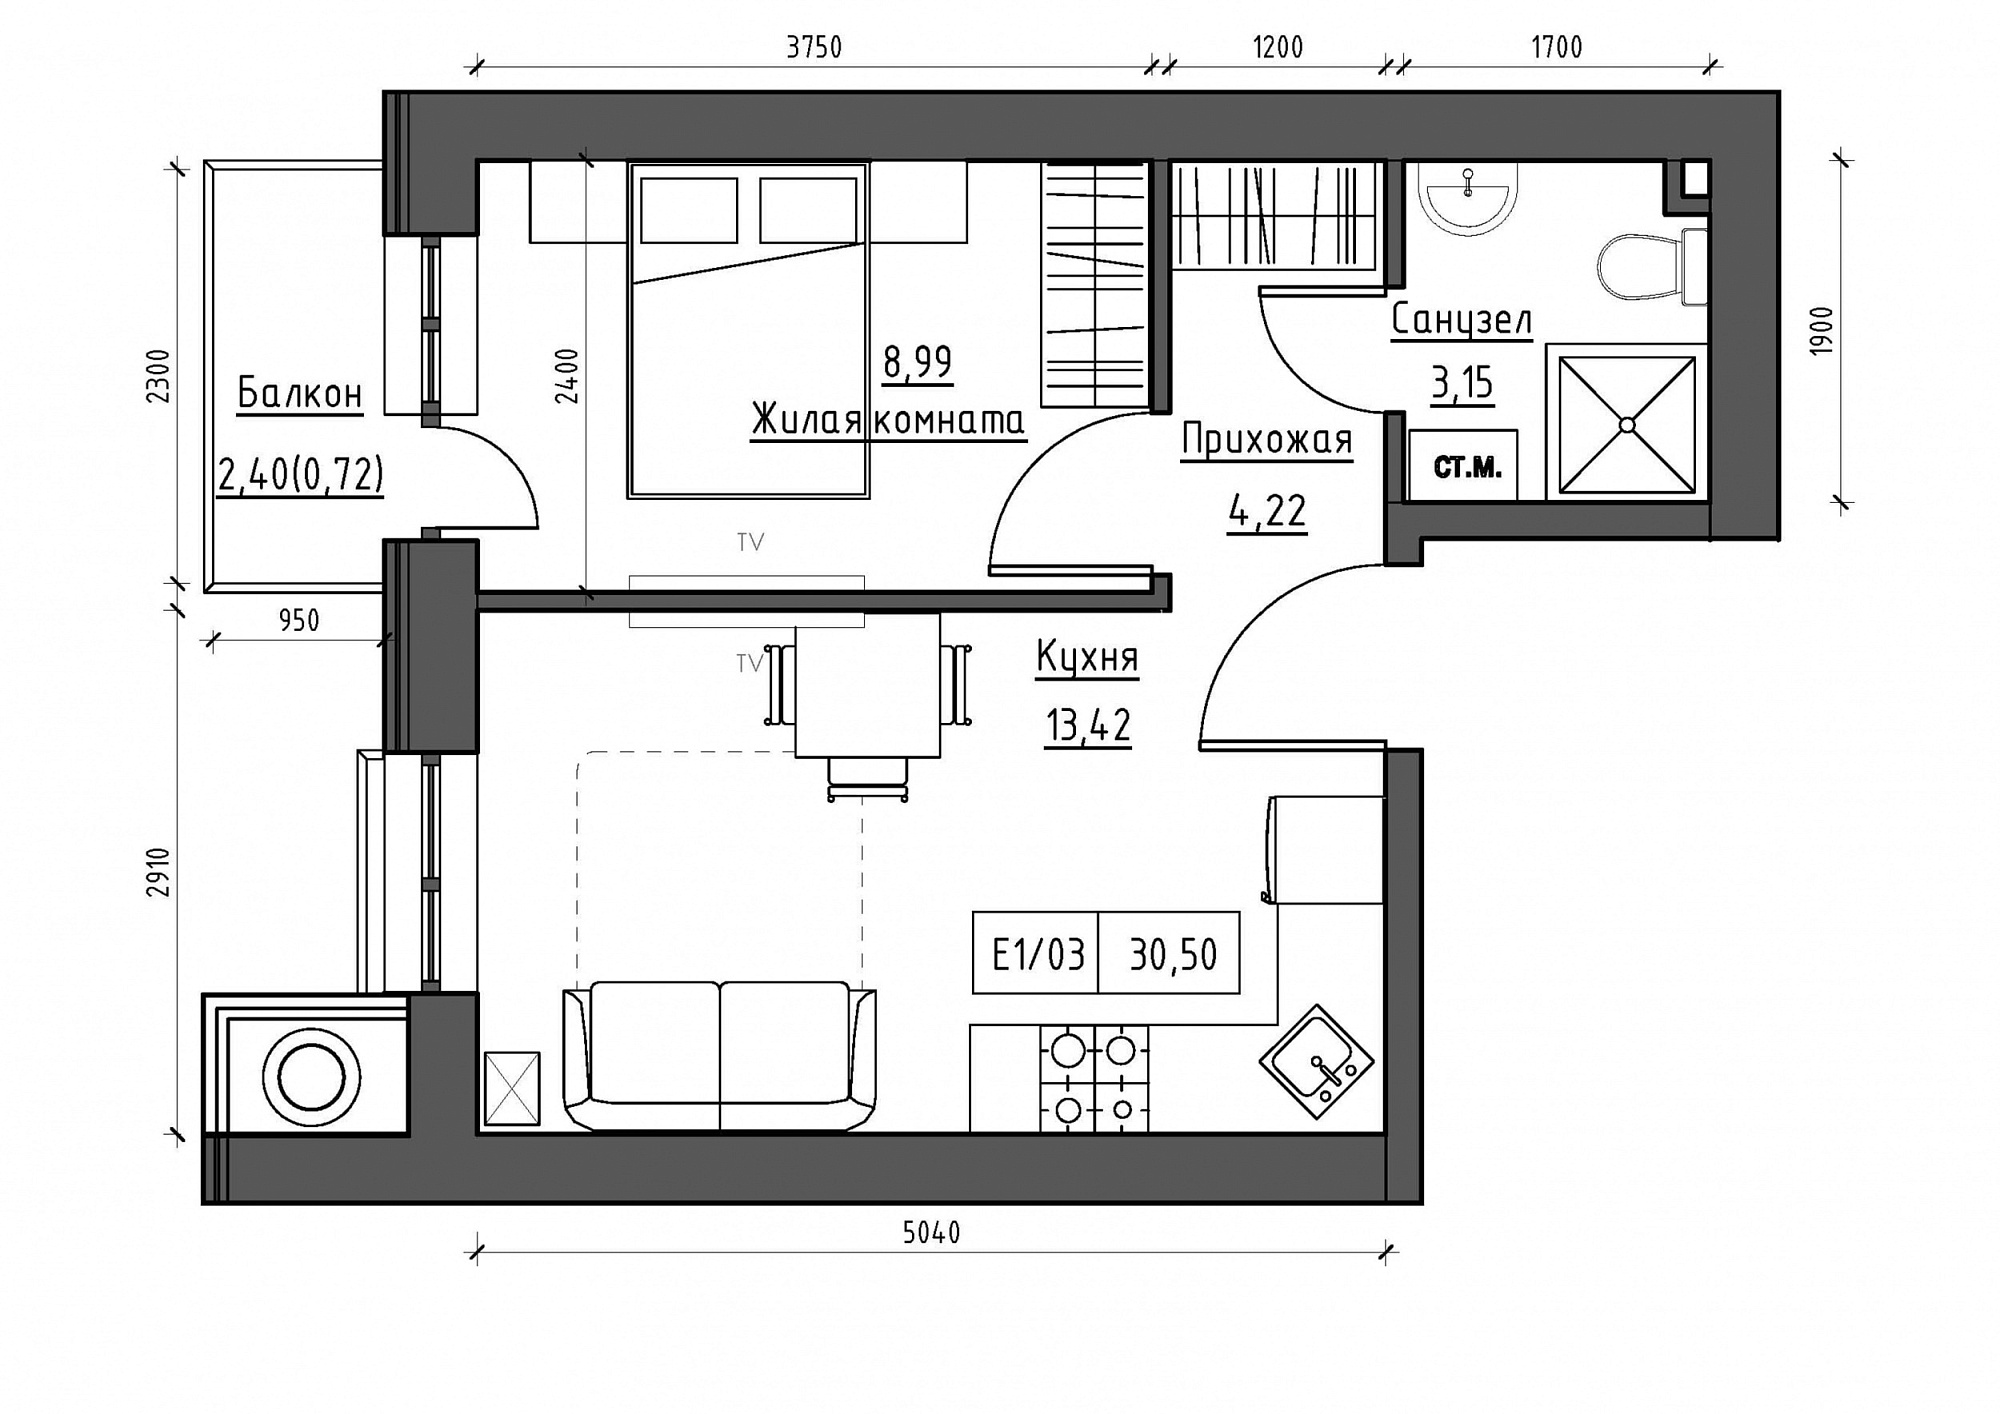 Планировка 1-к квартира площей 30.5м2, KS-011-05/0003.